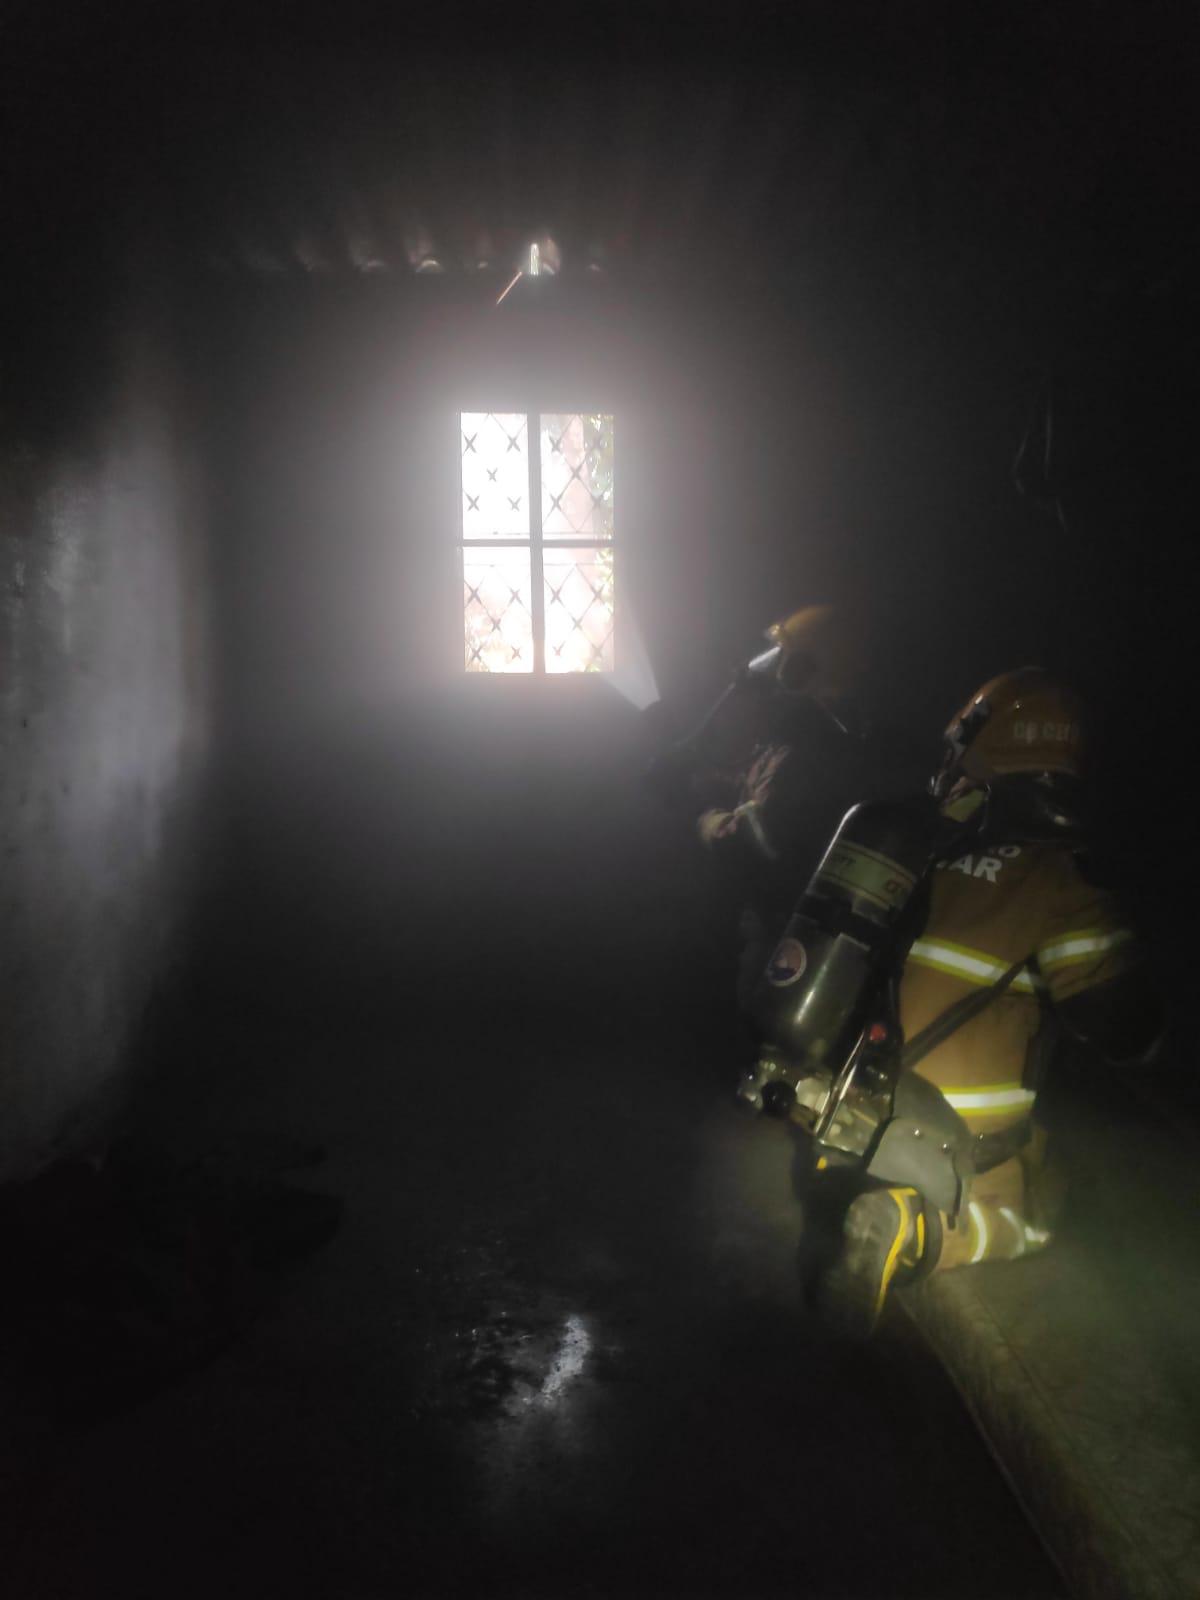 Vizinhos avistaram uma grande quantidade de fumaça saindo pelo teto da casa e alertaram os bombeiros (Foto/Divulgação)